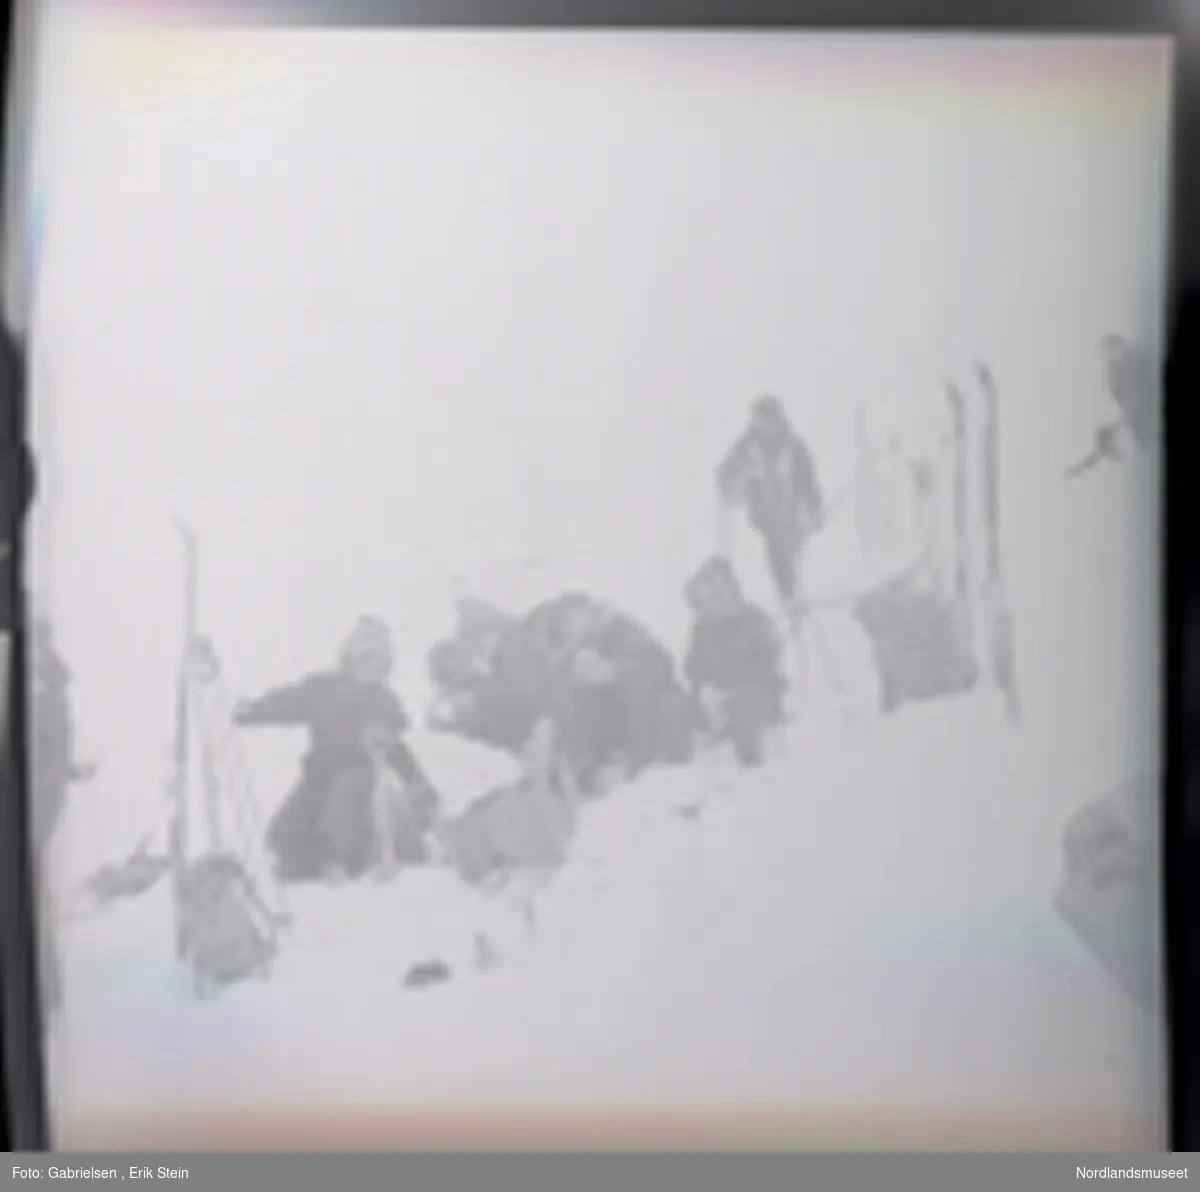 Fotografi av mange kvinner og menn kledd i vinterklær
som sitter på en snøbakke  på fjellet og graver etter mat og drikke i en tursekk som som ligger på snøen og en mann som går på ski på snøbakken over de og en kvinne som står på toppen av snøbakken vedsiden av en svart hund ¨
og man ser mange ski og skistaver og tursekker som står vedsiden av gruppen som er på skitur i fjellet 
og man ser litt av en mann som står på snøen vedsiden
av noen ski og skistaver og en tursekk som står i snøen